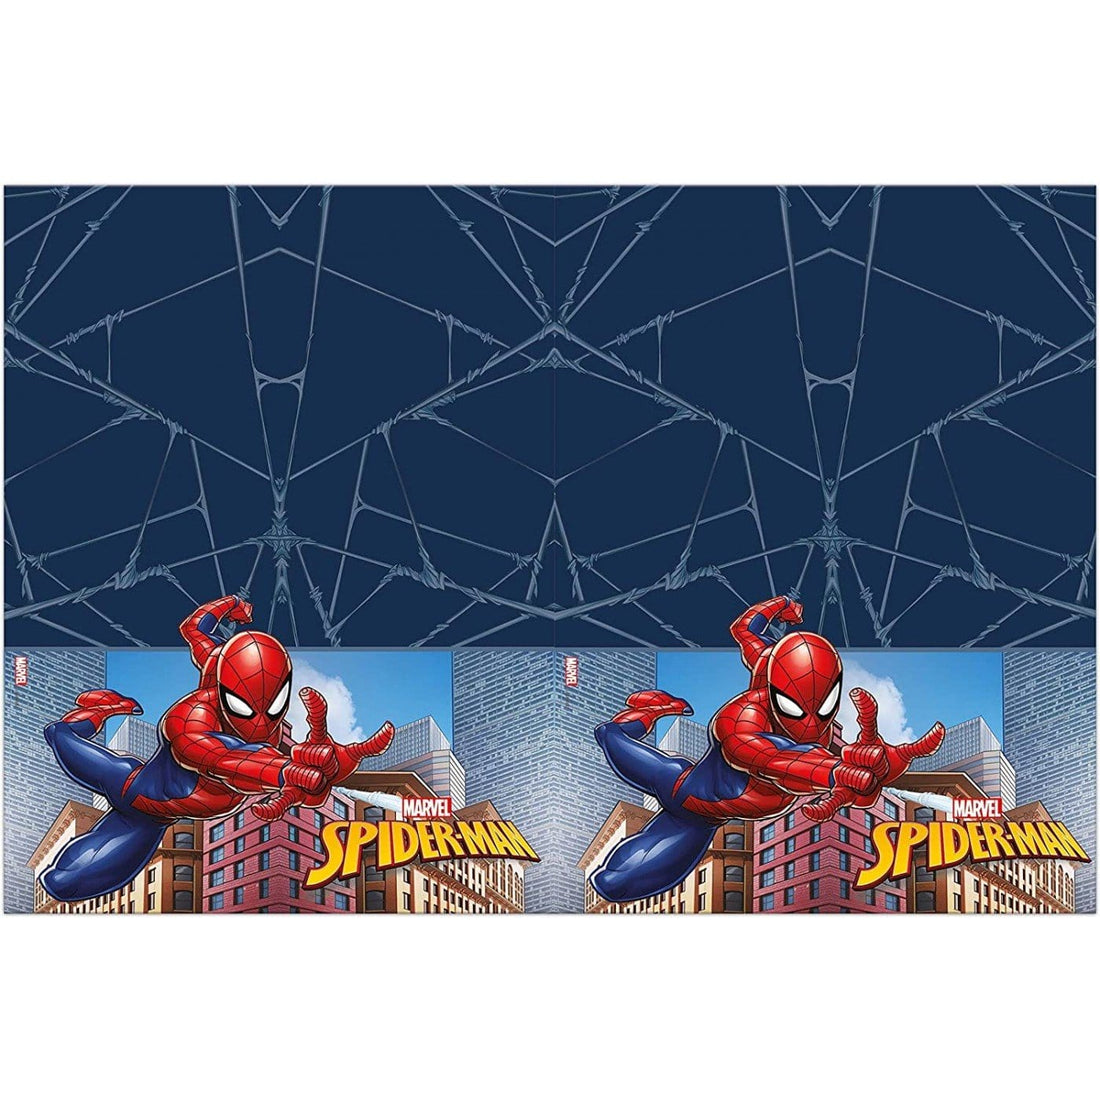 Spiderman plastdúkur 120cmx180cm